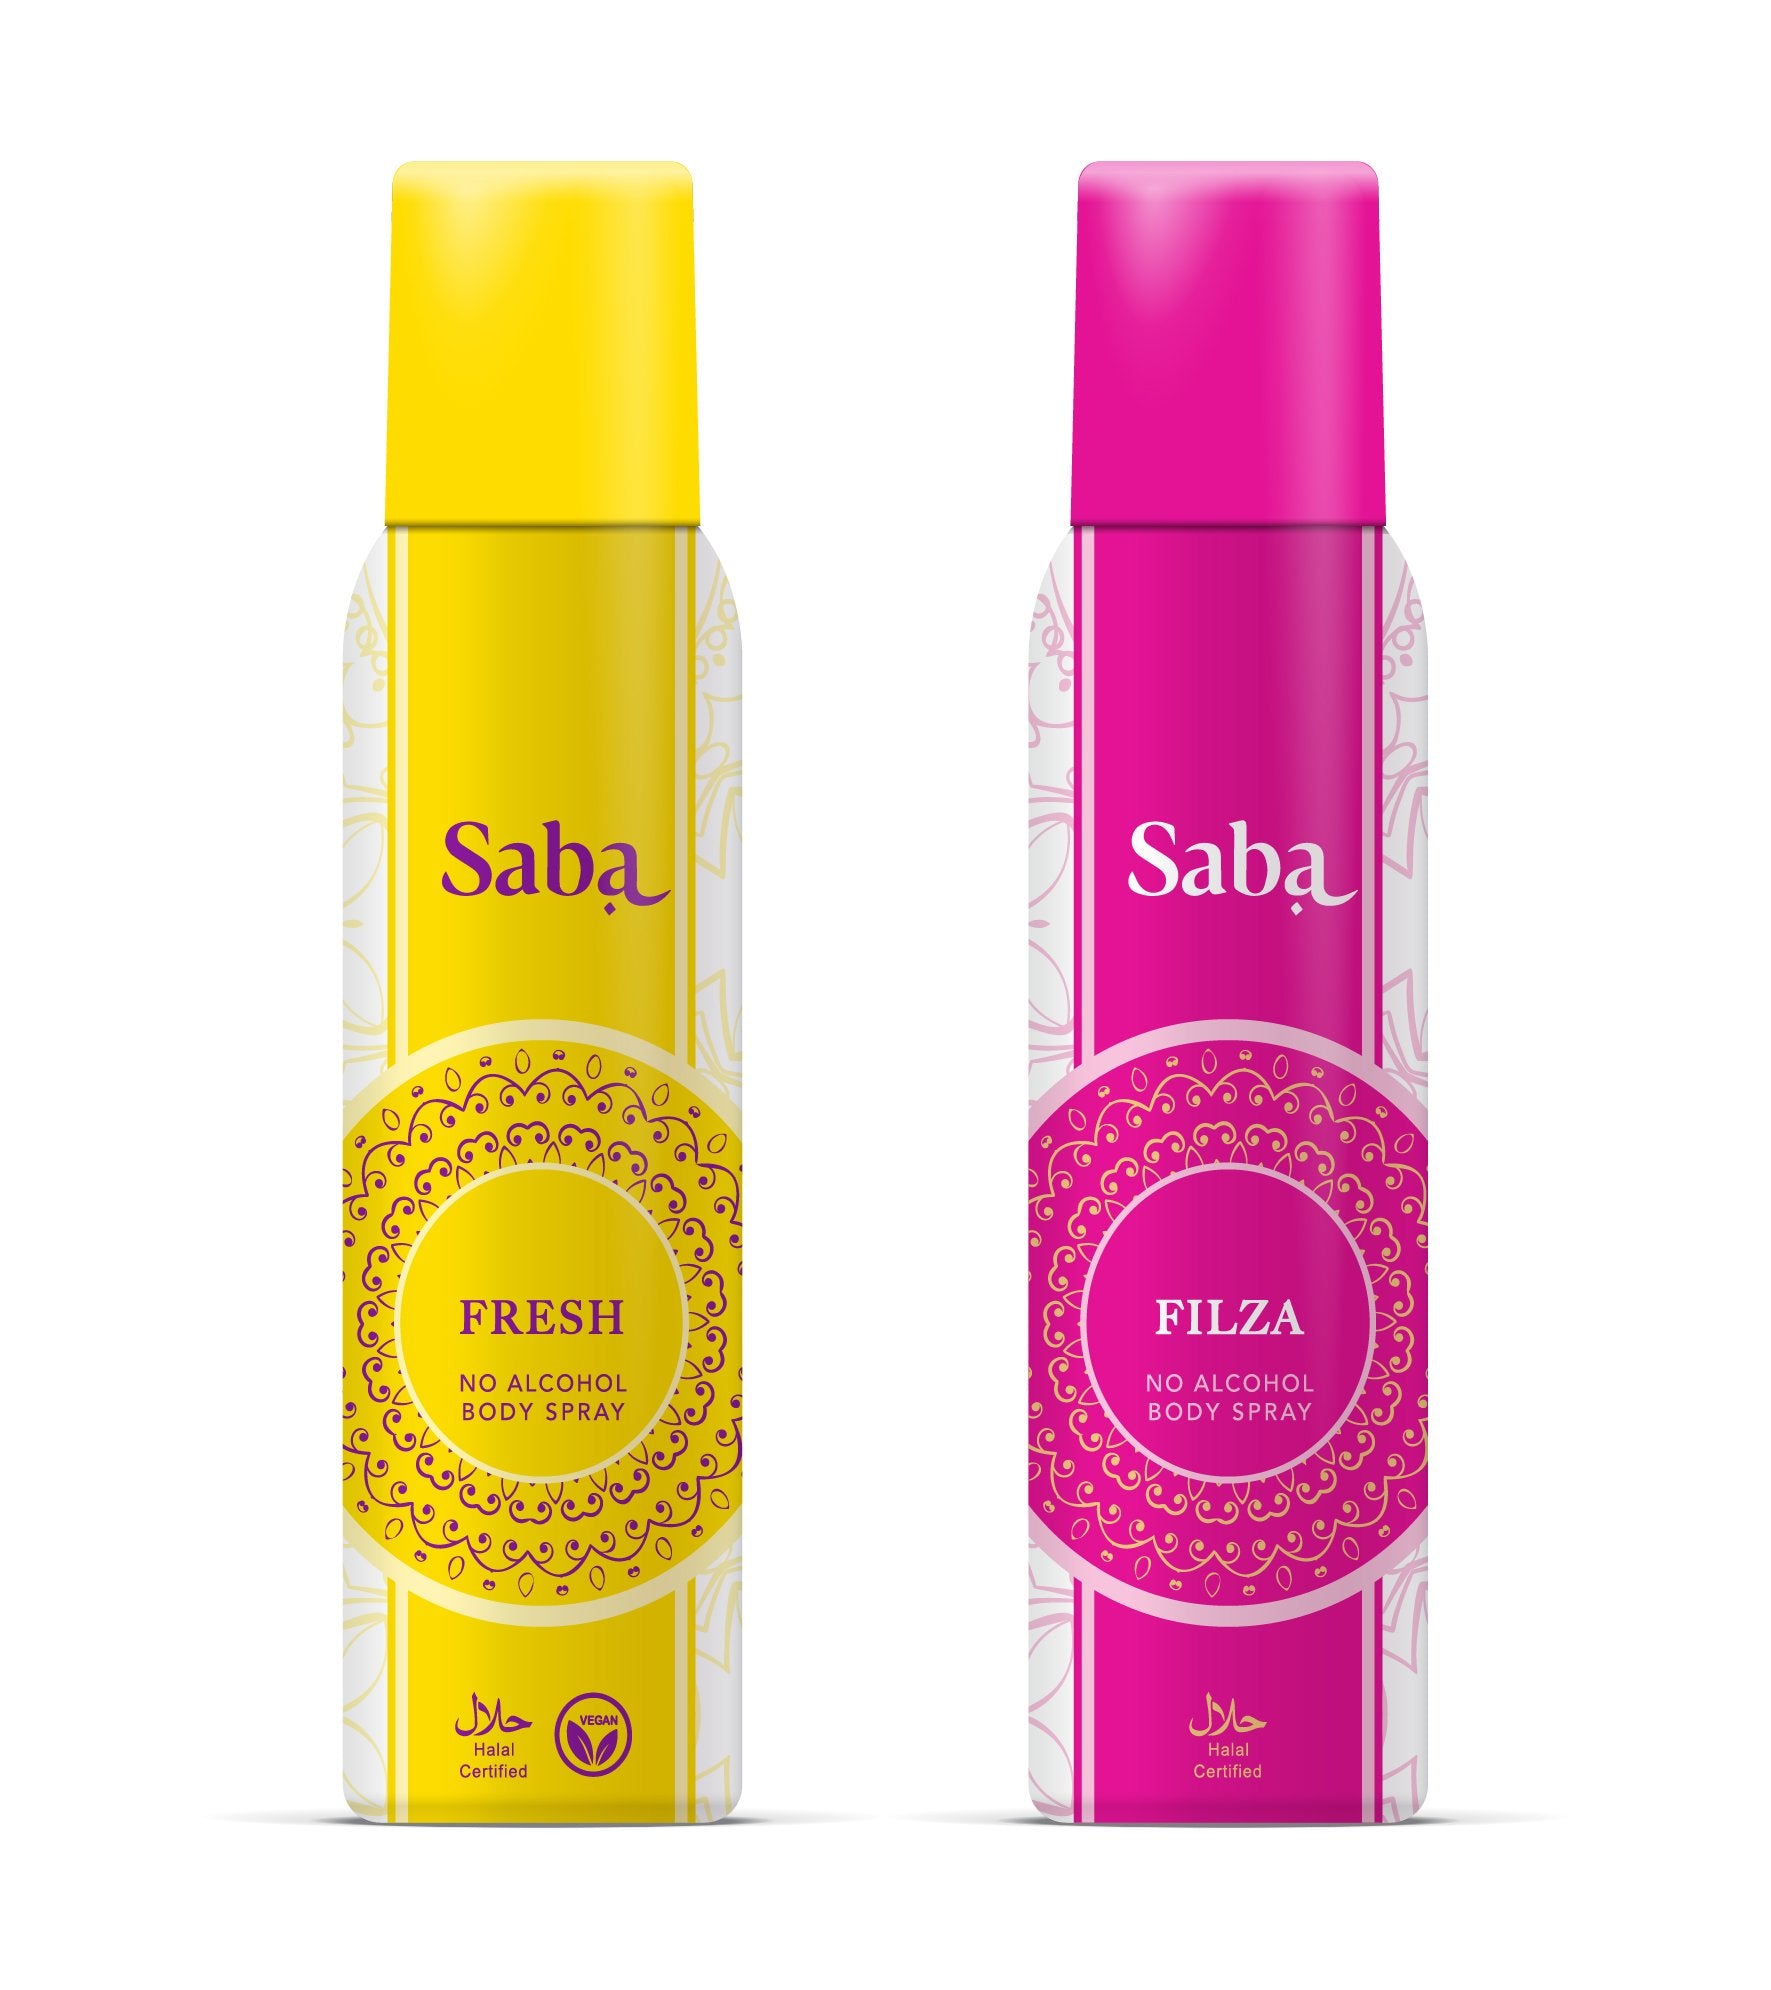 Combo Saba Filza & Saba Fresh with Saba Moisturizing Facewash Free